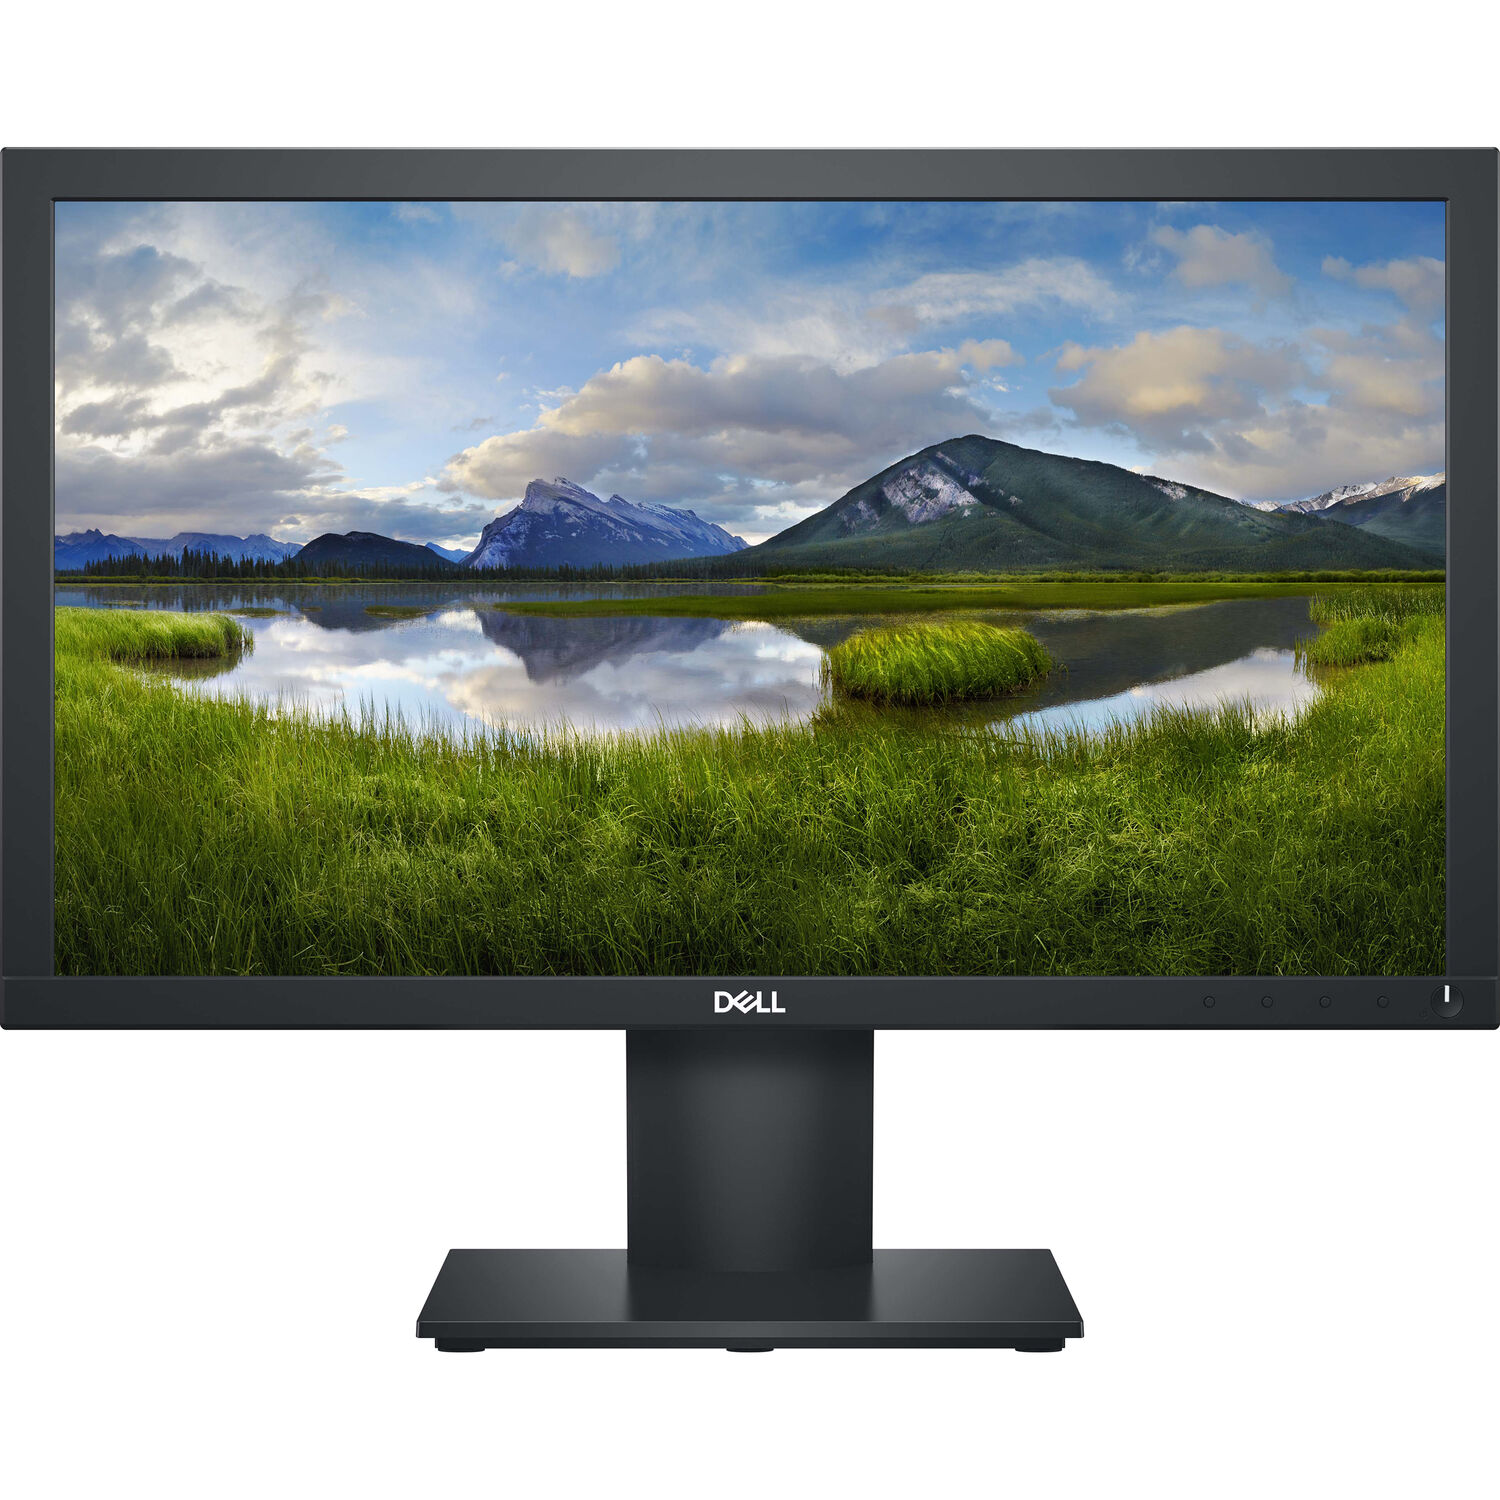 Dell E2020H 20" 16:9 TN Monitor